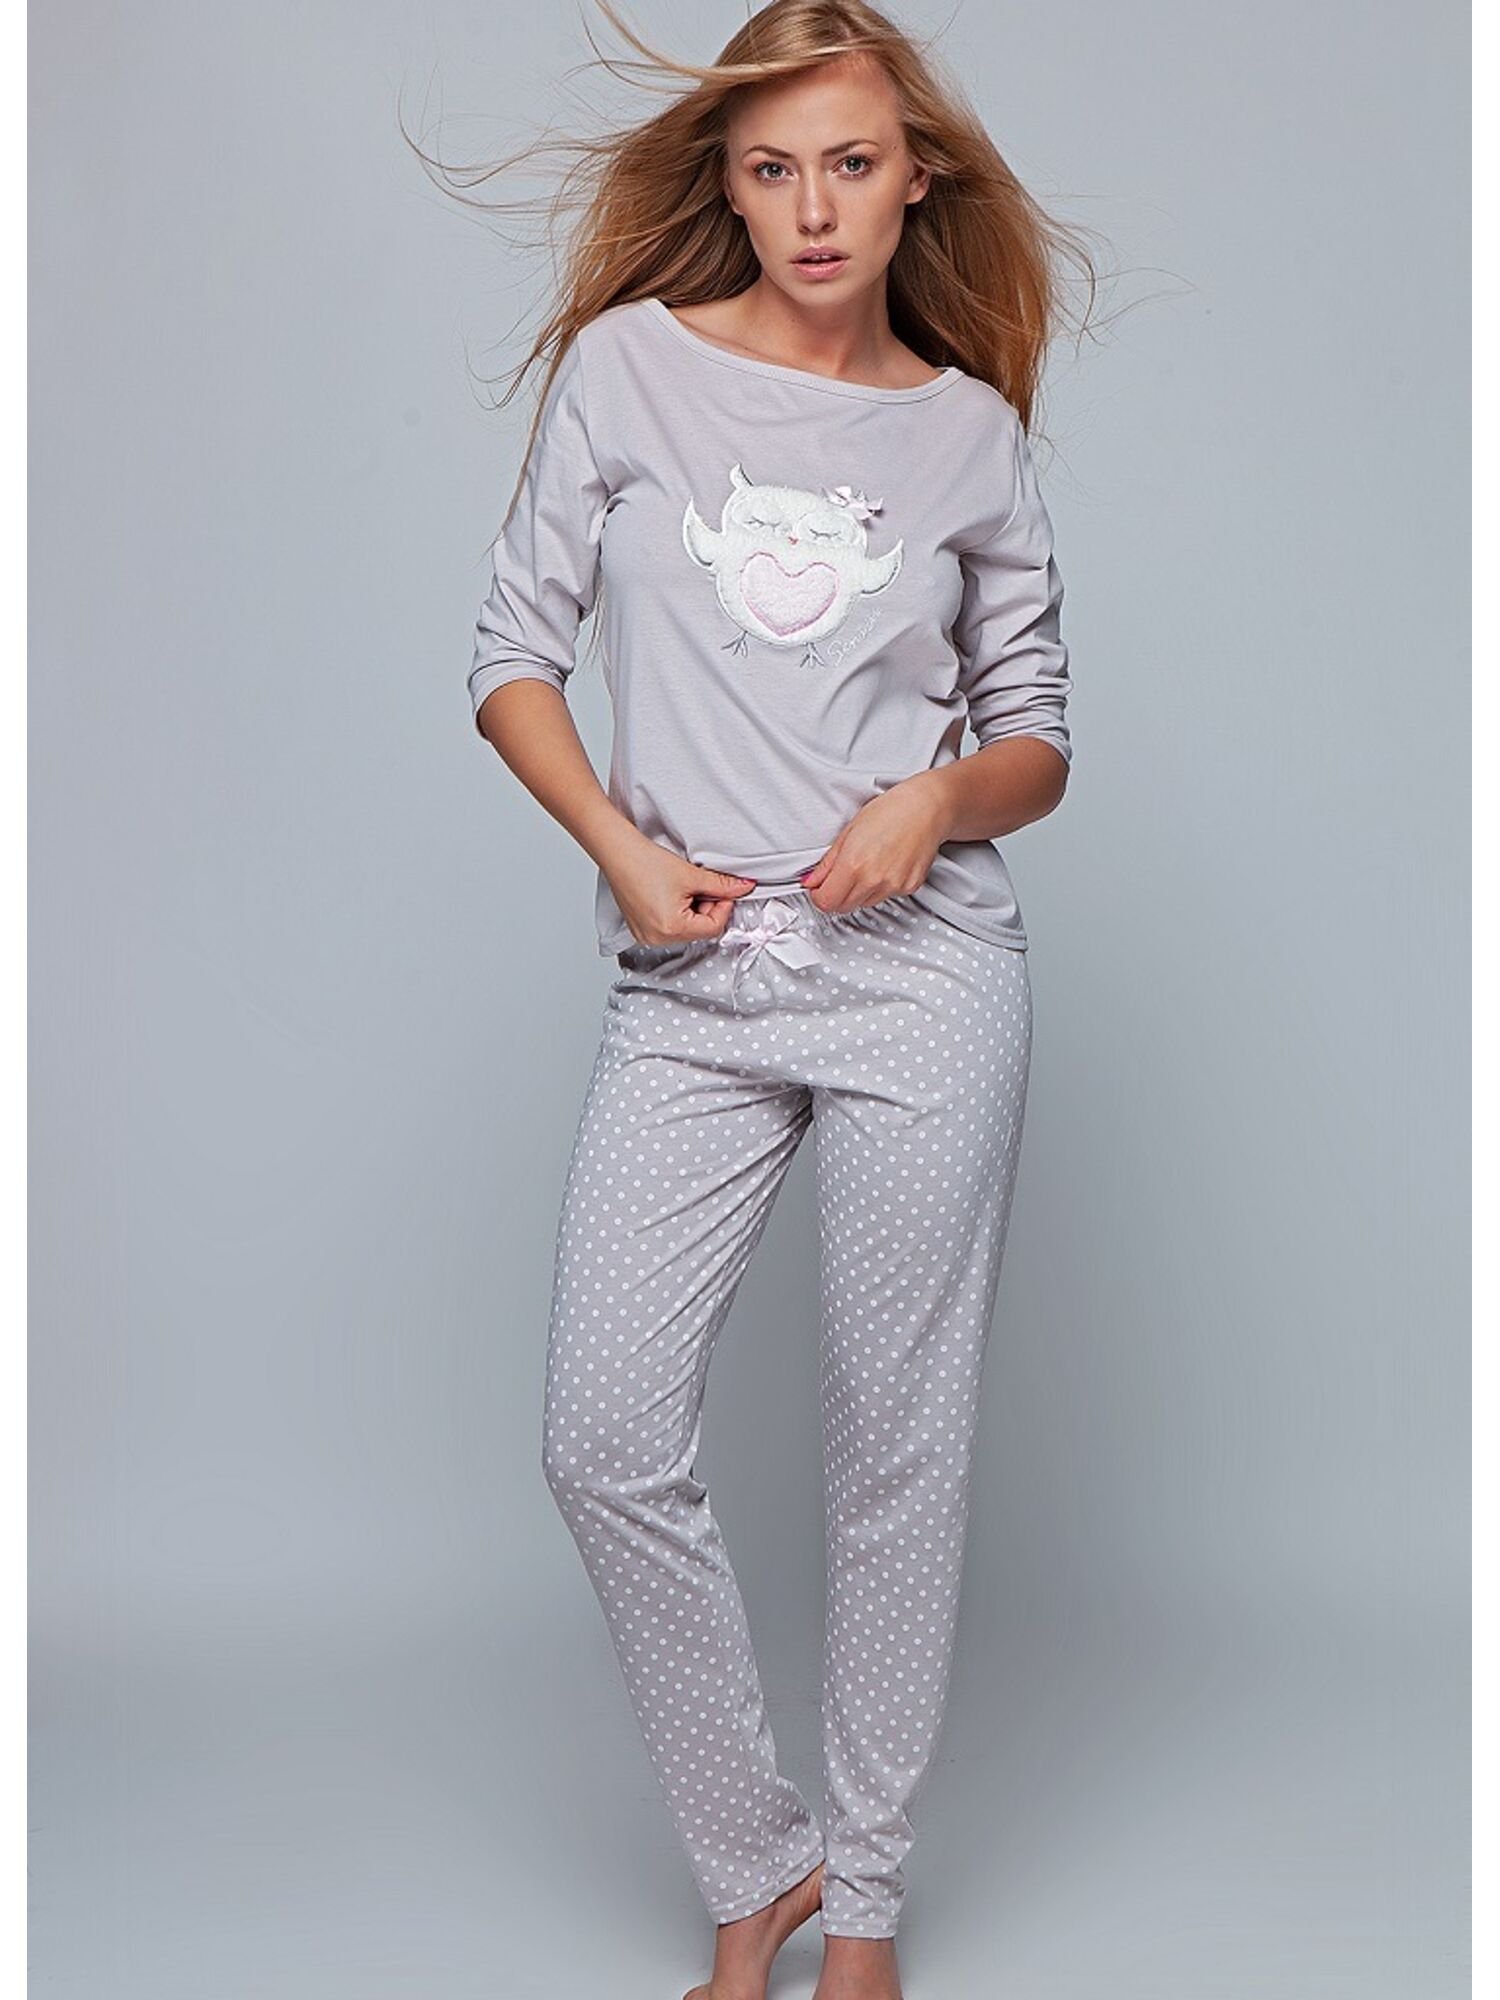 Пижамы женские каталог. Пижама Sensis, размер s, мокко. Пижама Sensis, 42 (XL), белый. Пижамы сенсис с брюками. Sensis пижама Golden, серый, m.